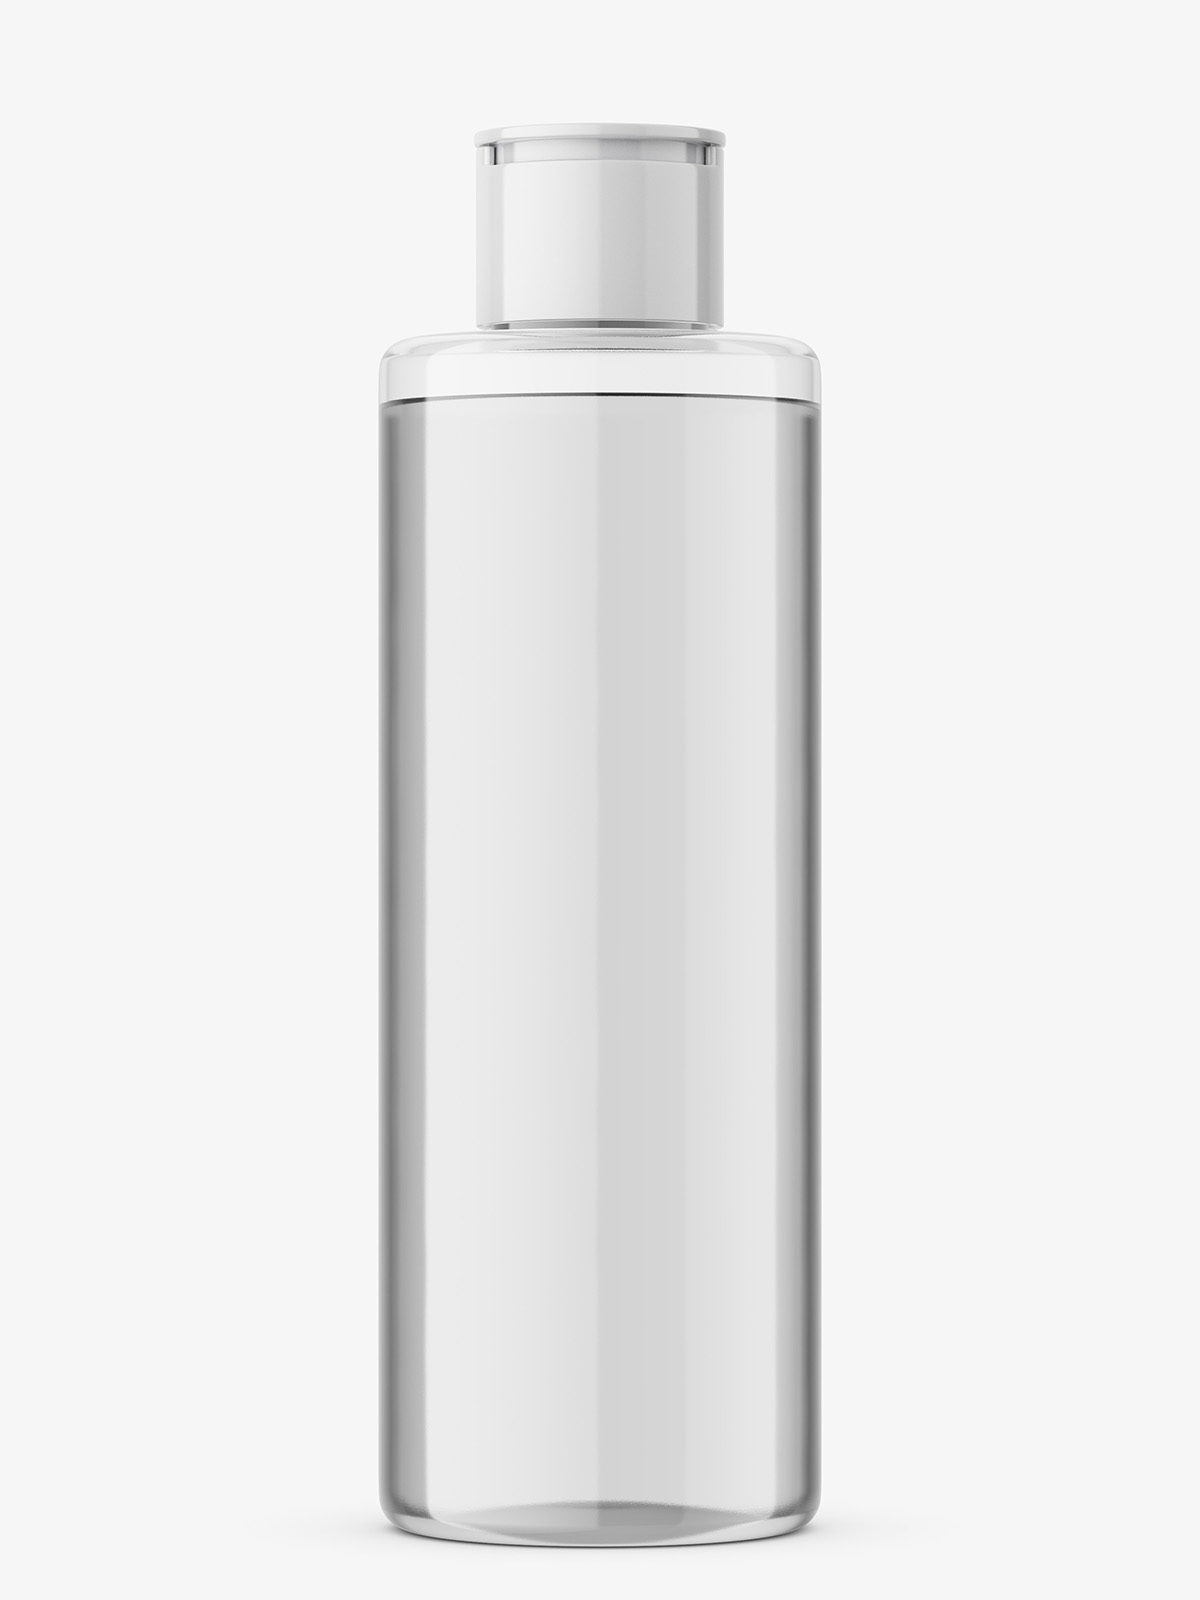 Download Transparent Cosmetic Bottle Mockup